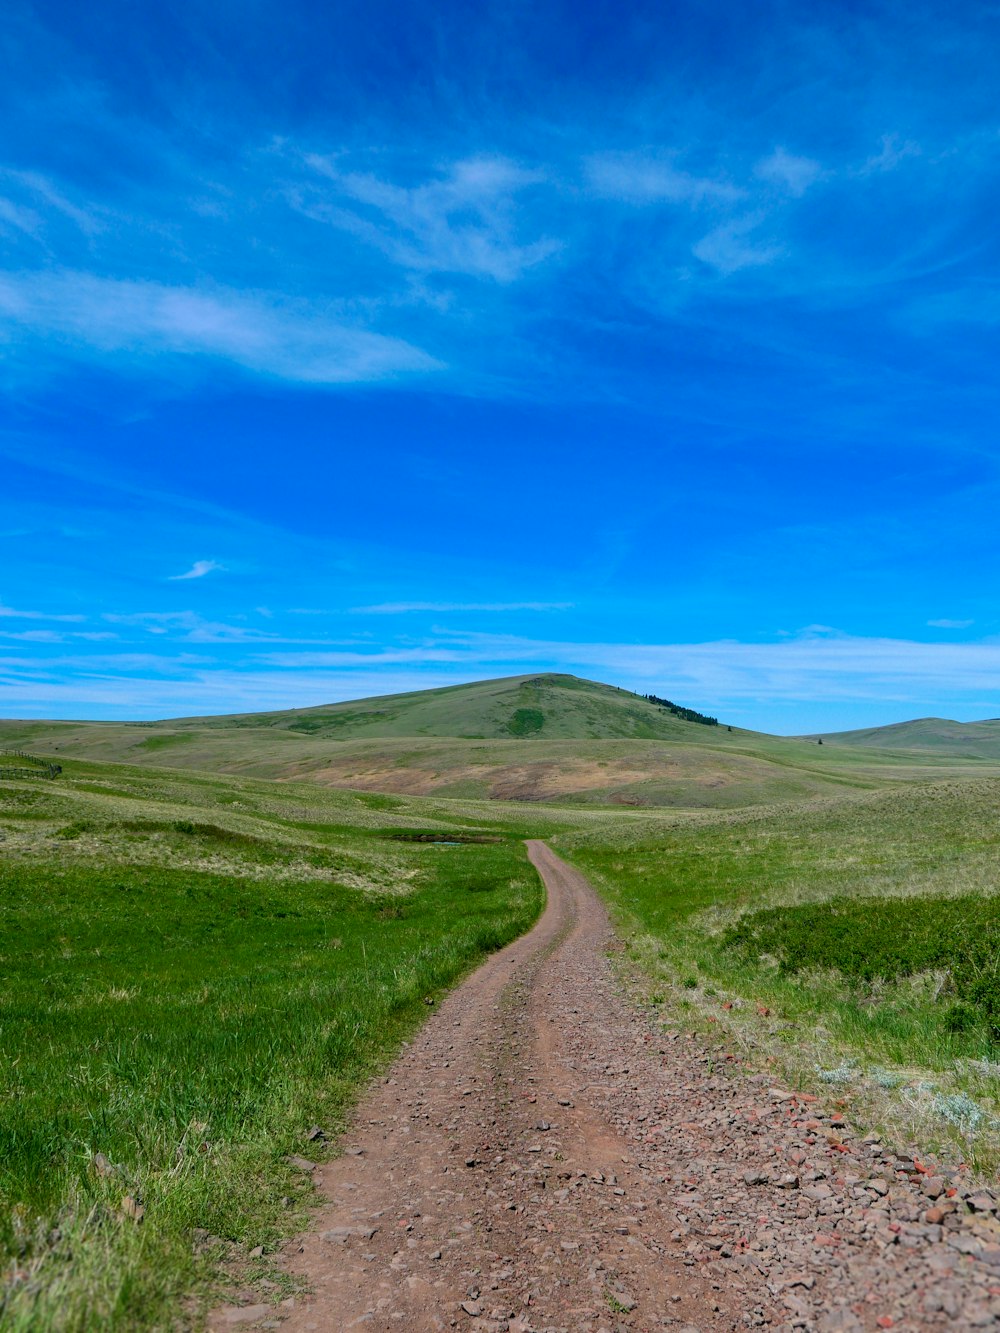 Un camino de tierra que conduce a una colina con una colina cubierta de hierba en el fondo